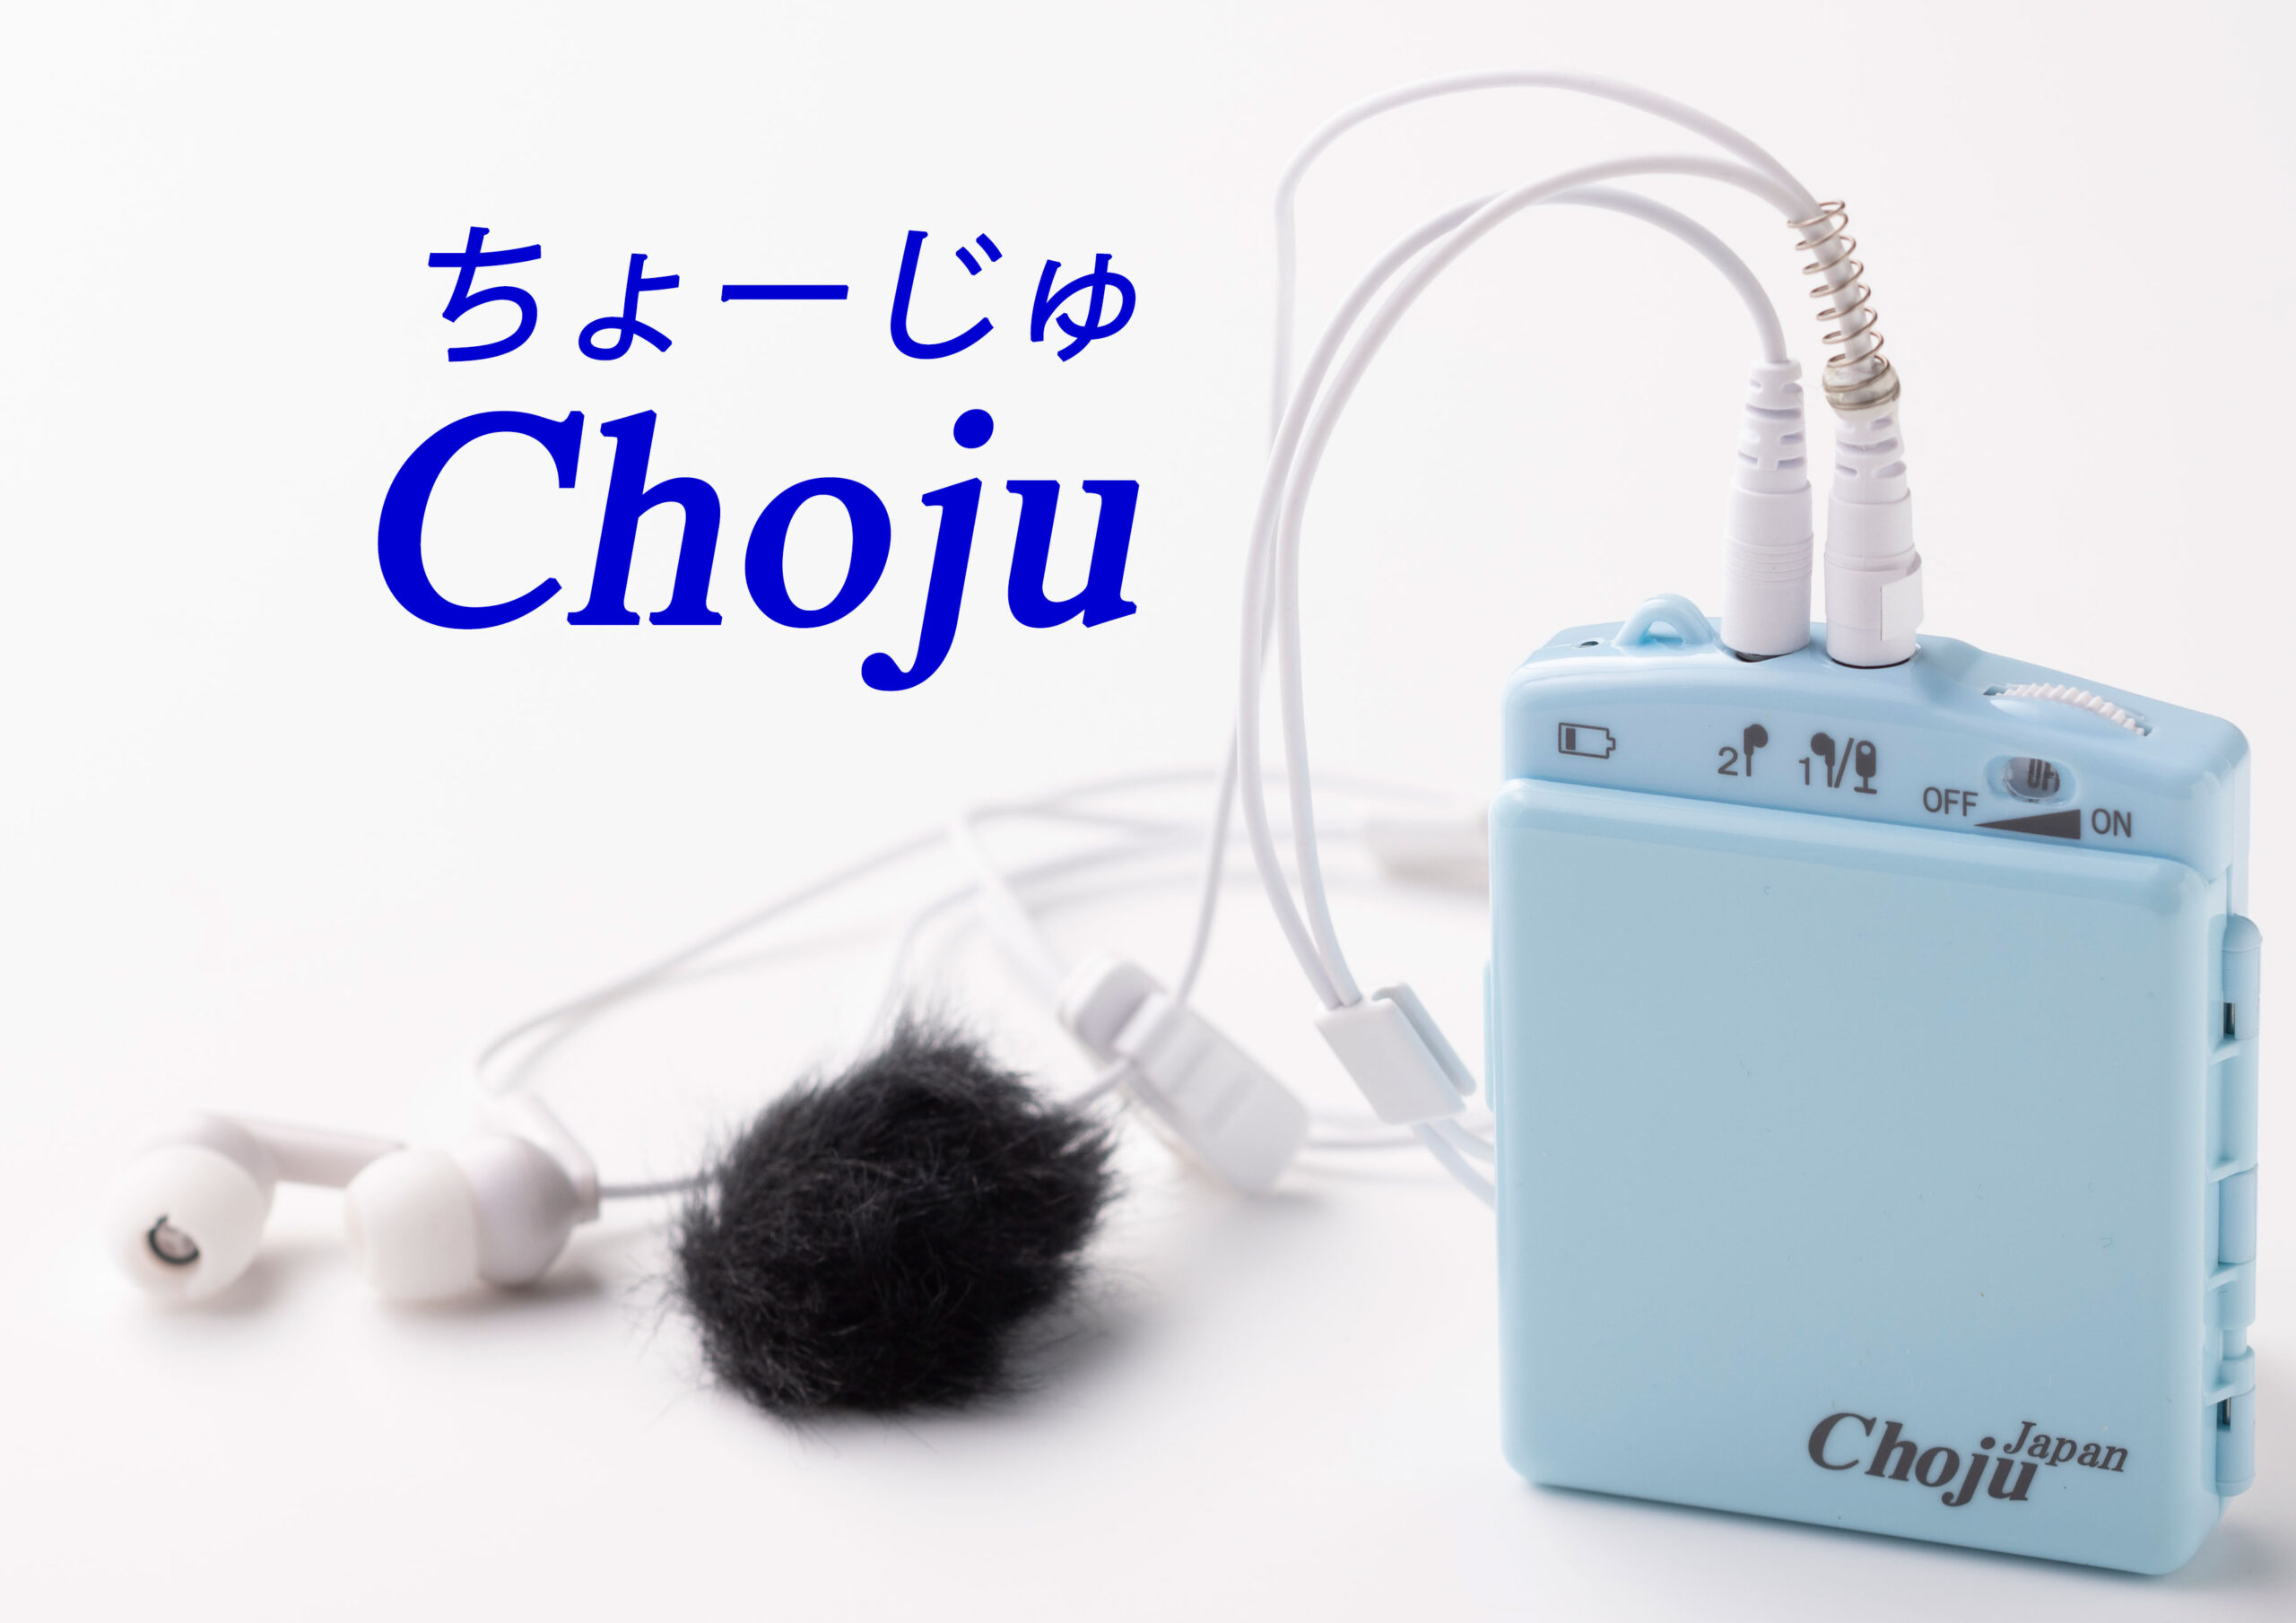 Chojuシリーズのラインアップとオプション品を紹介。 | 認知症予防効果